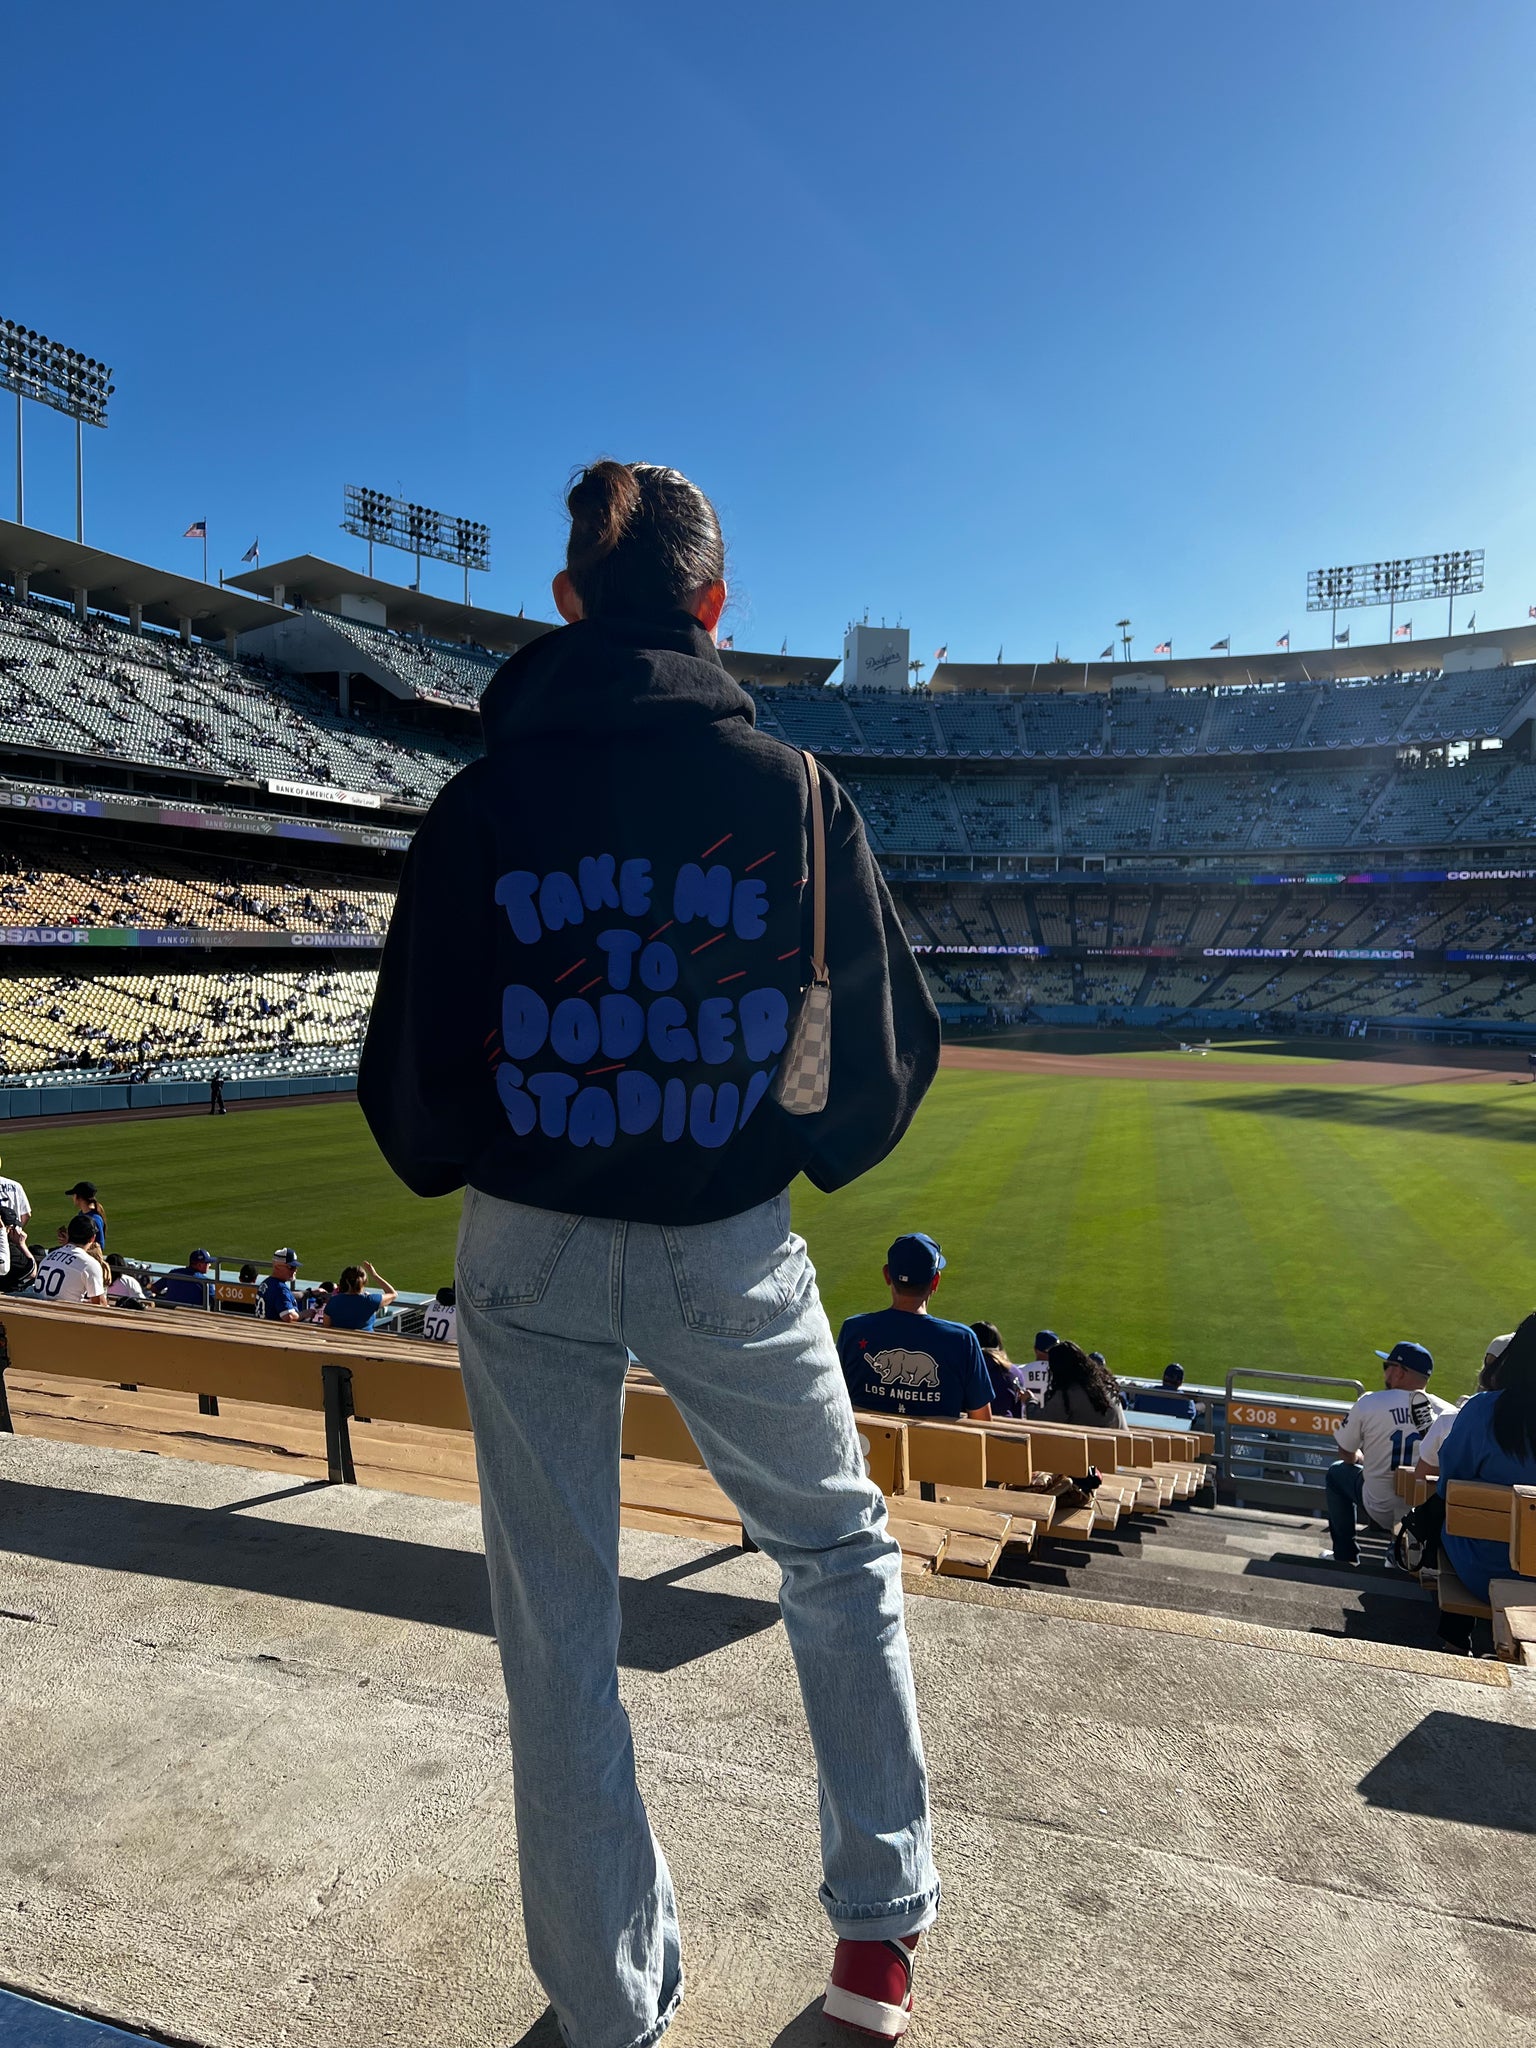 Dodgers Tie Dye Crew Sweatshirt Dodger Sweater Dodger -  New